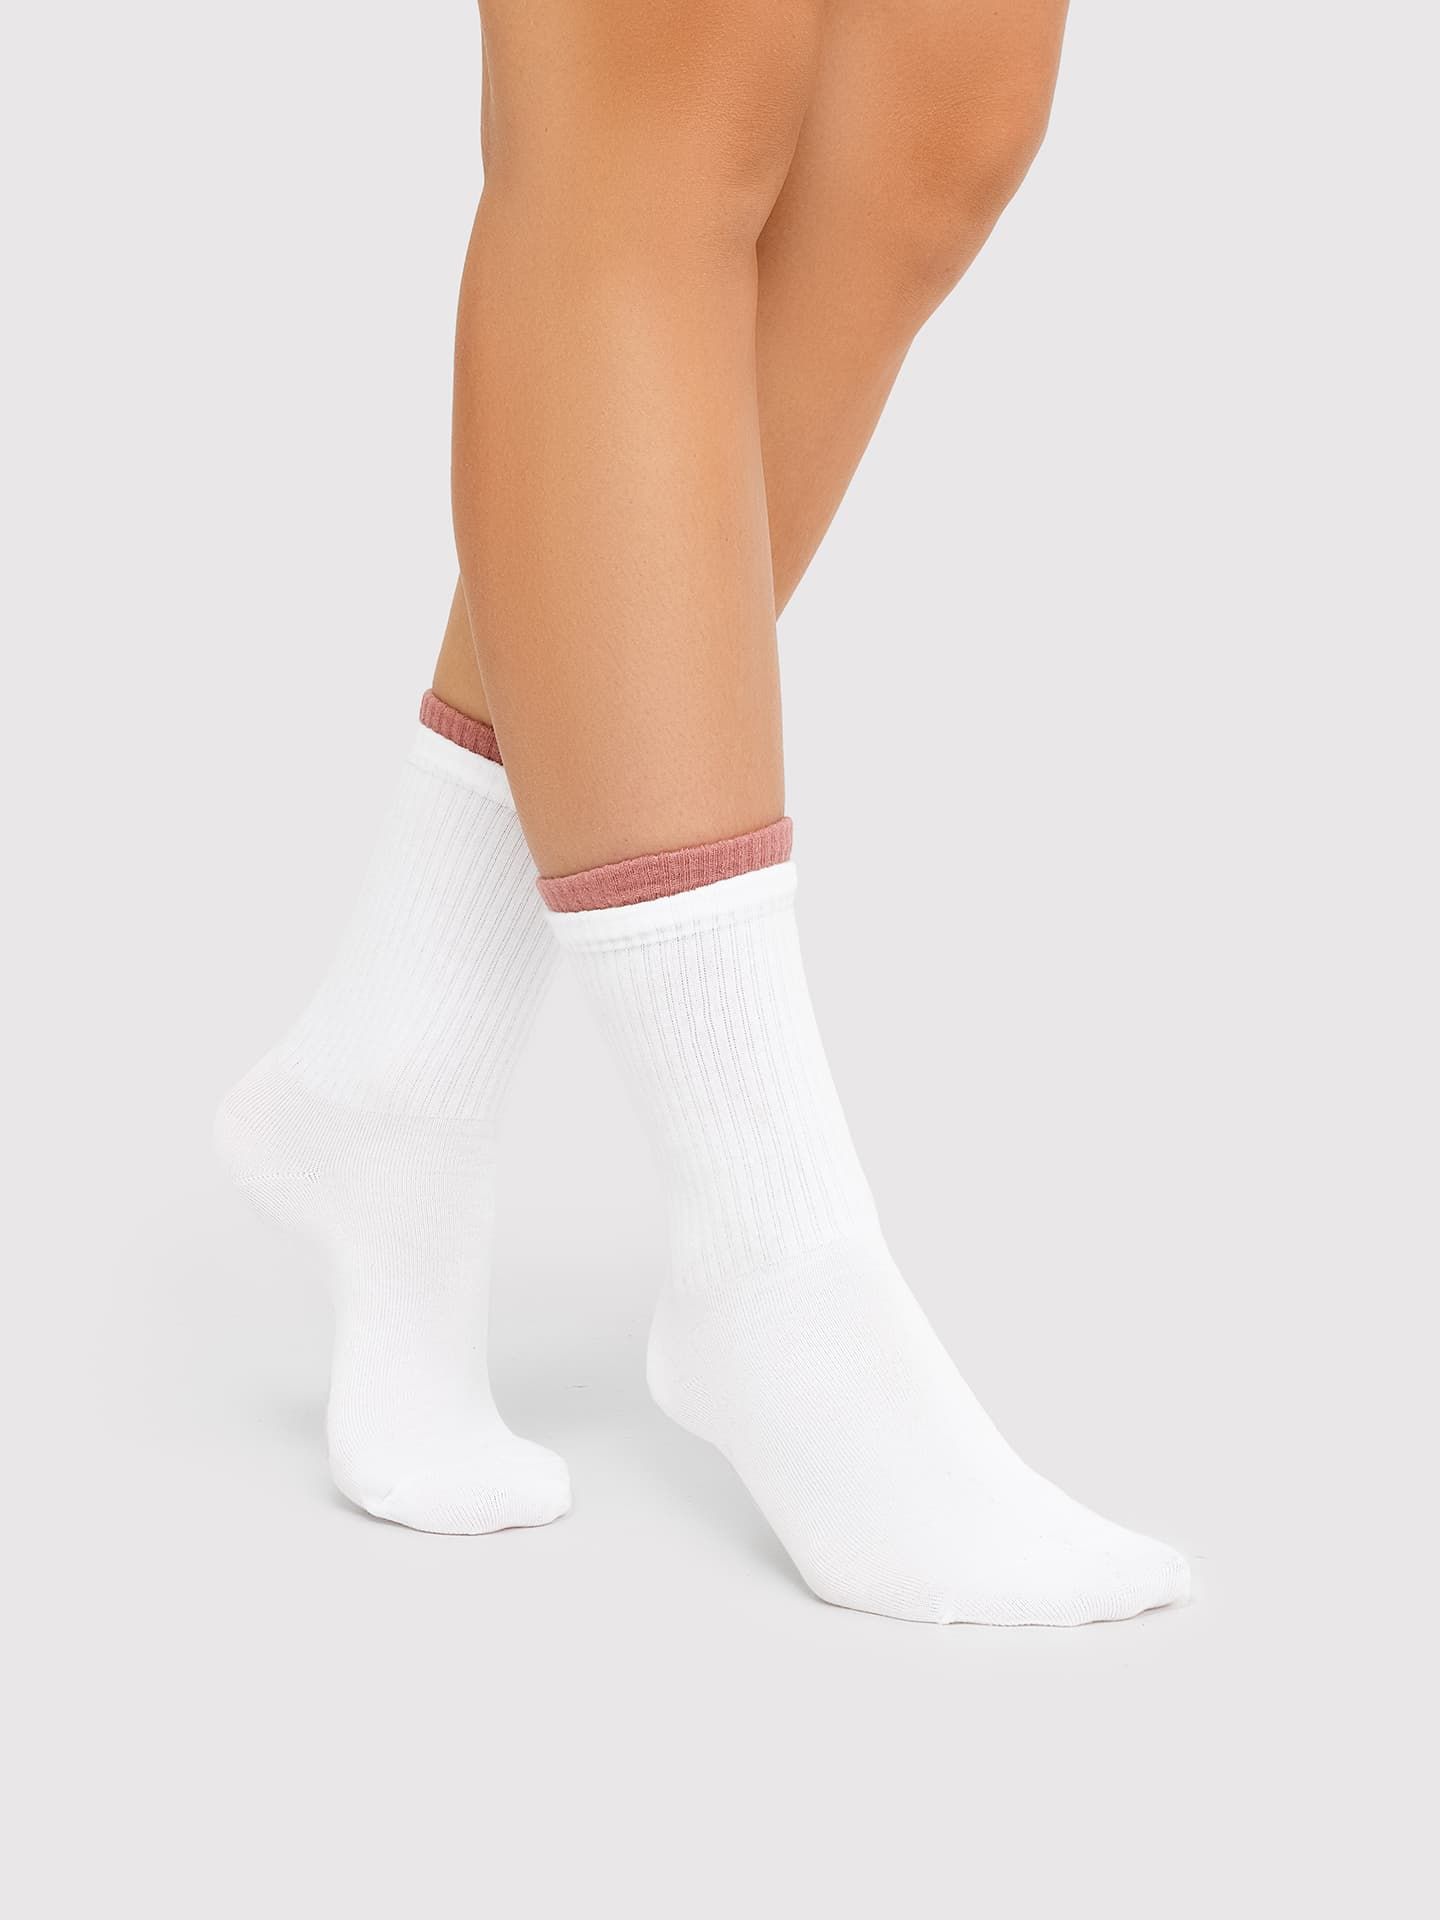 Высокие женские носки белого цвета с многослойным бортом